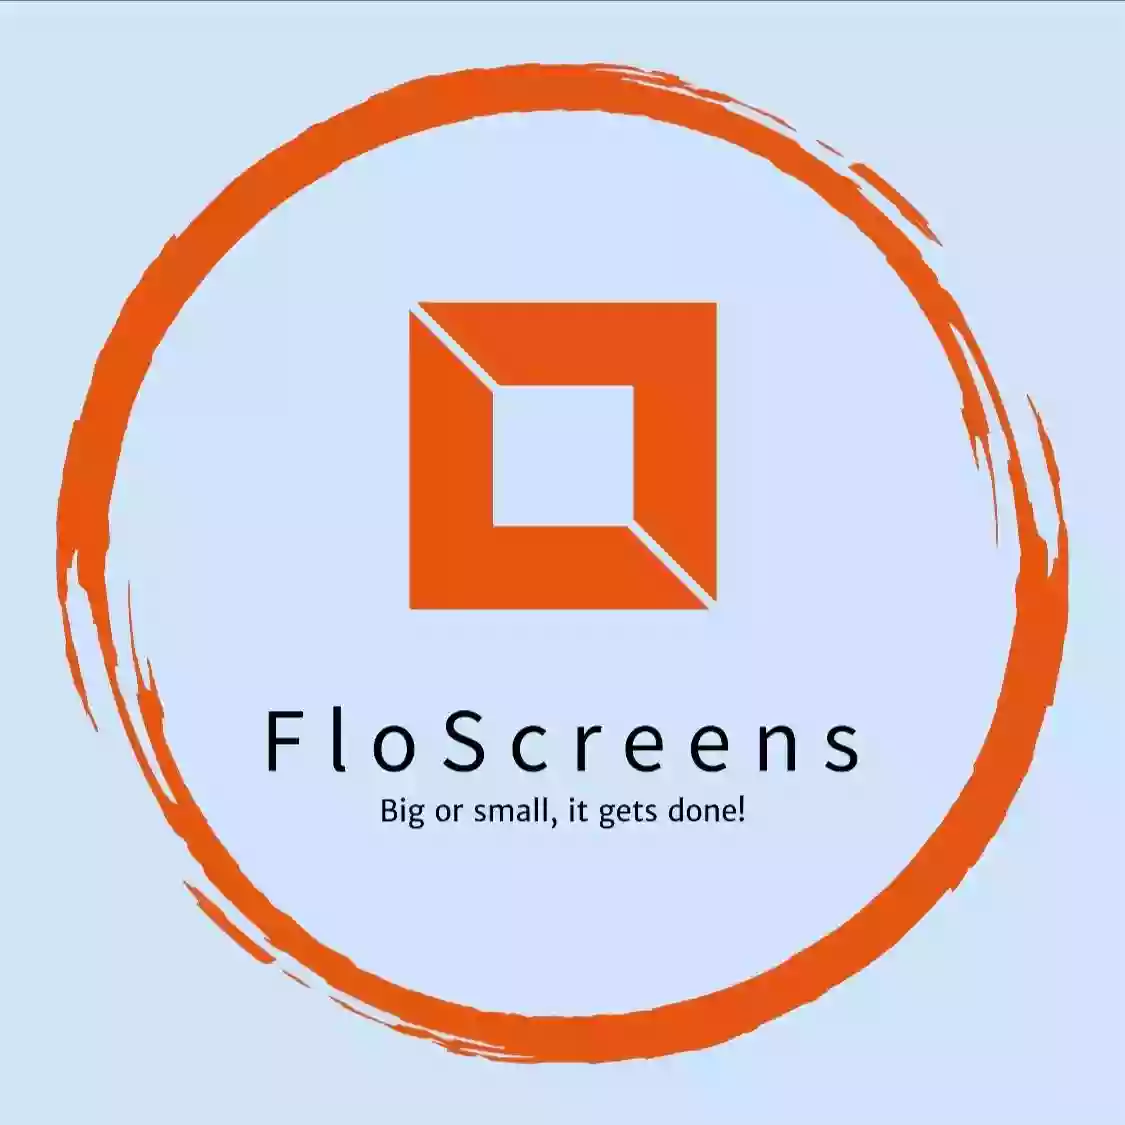 Floscreens